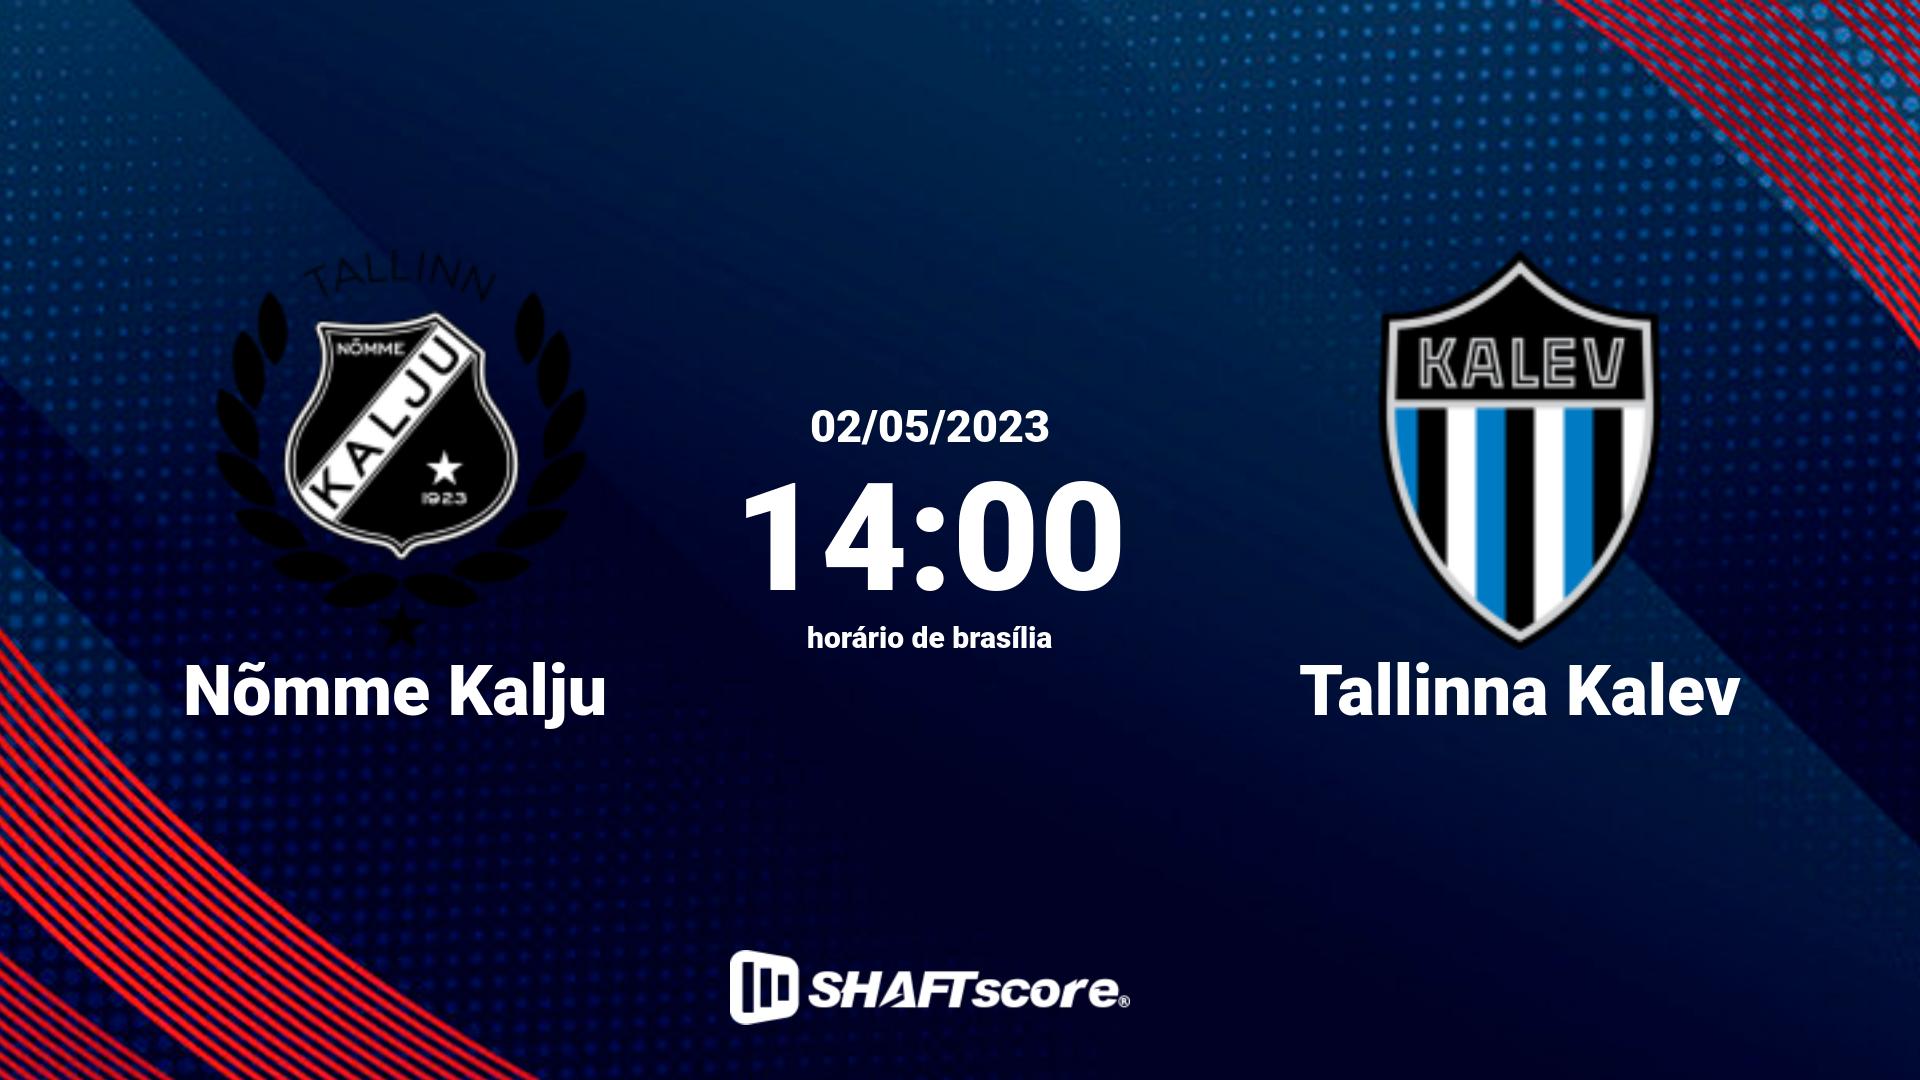 Estatísticas do jogo Nõmme Kalju vs Tallinna Kalev 02.05 14:00